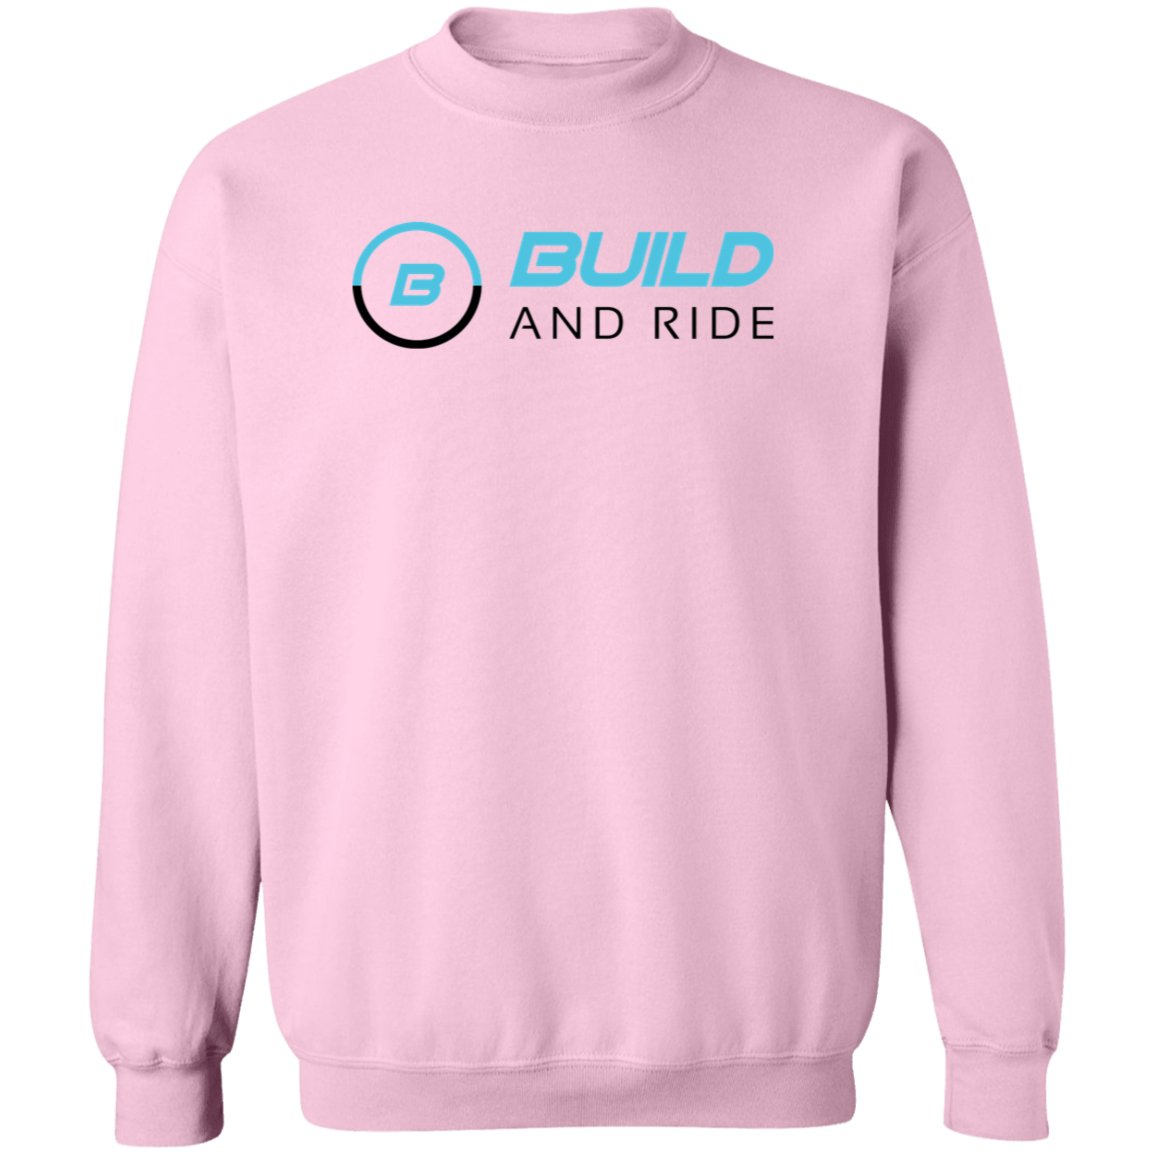 Build And Ride Crewneck Sweatshirt - Build And Ride